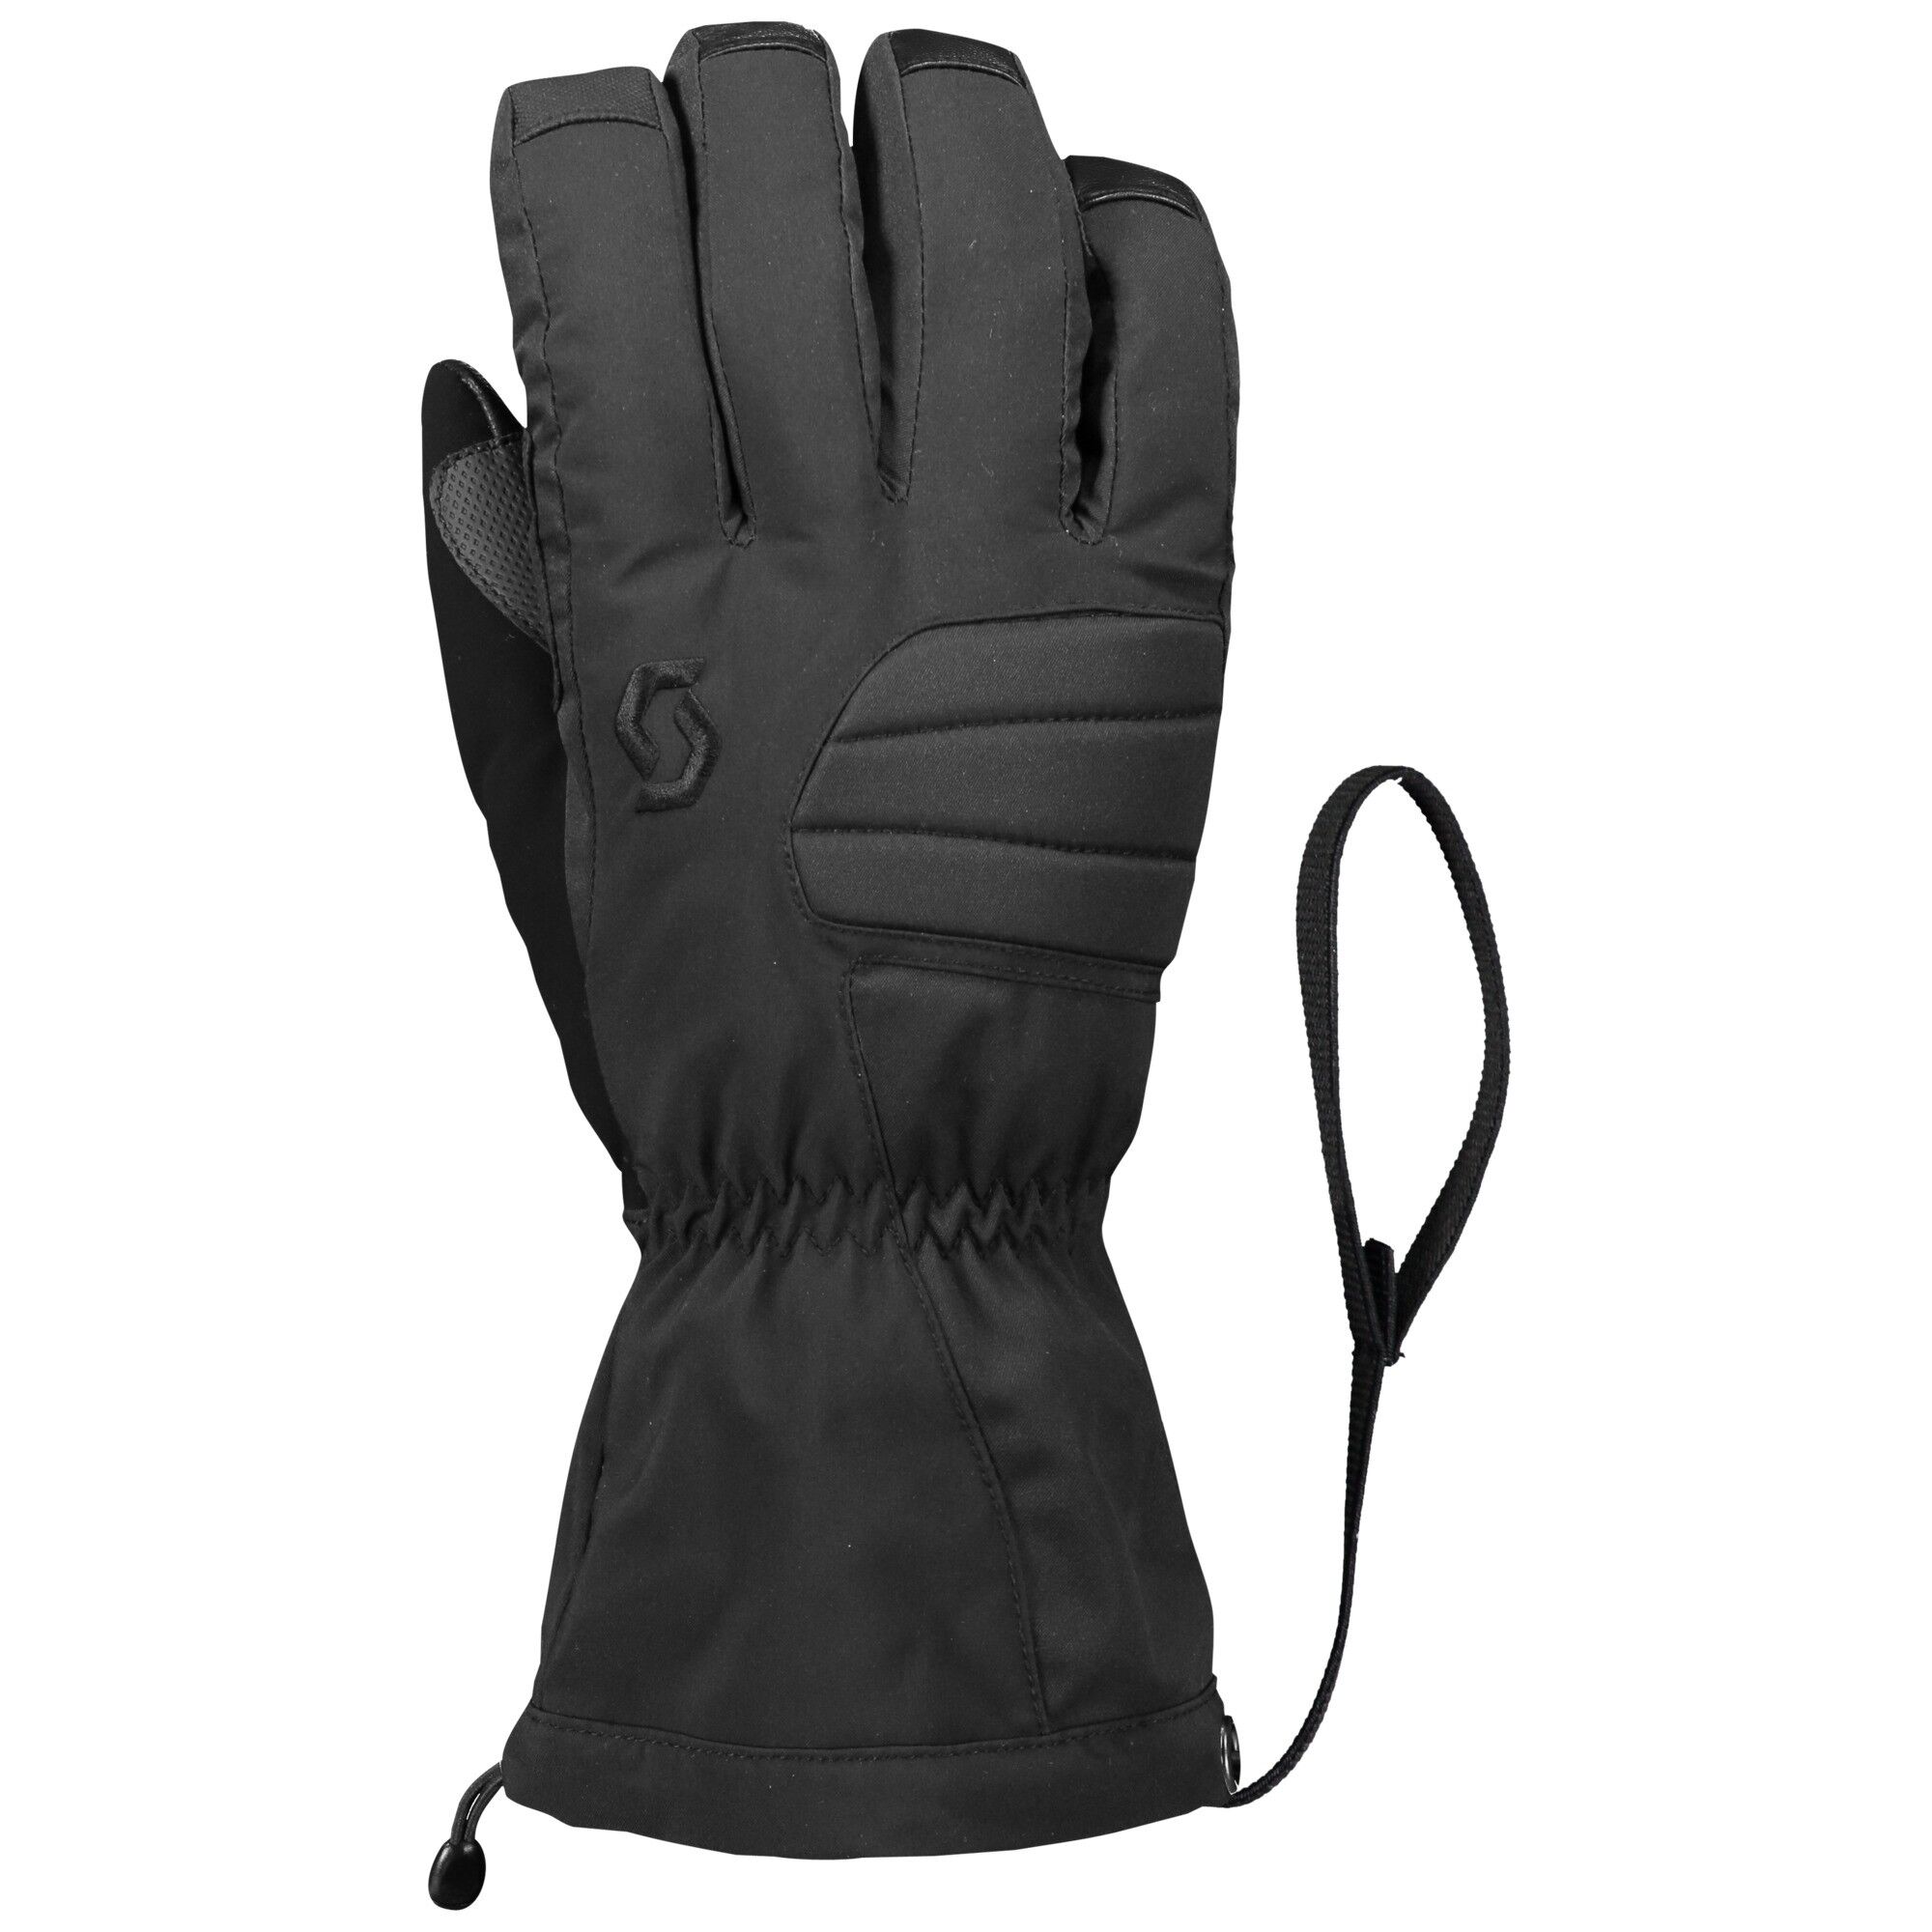 Scott Ultimate Premium GTX - Ski gloves - Men's